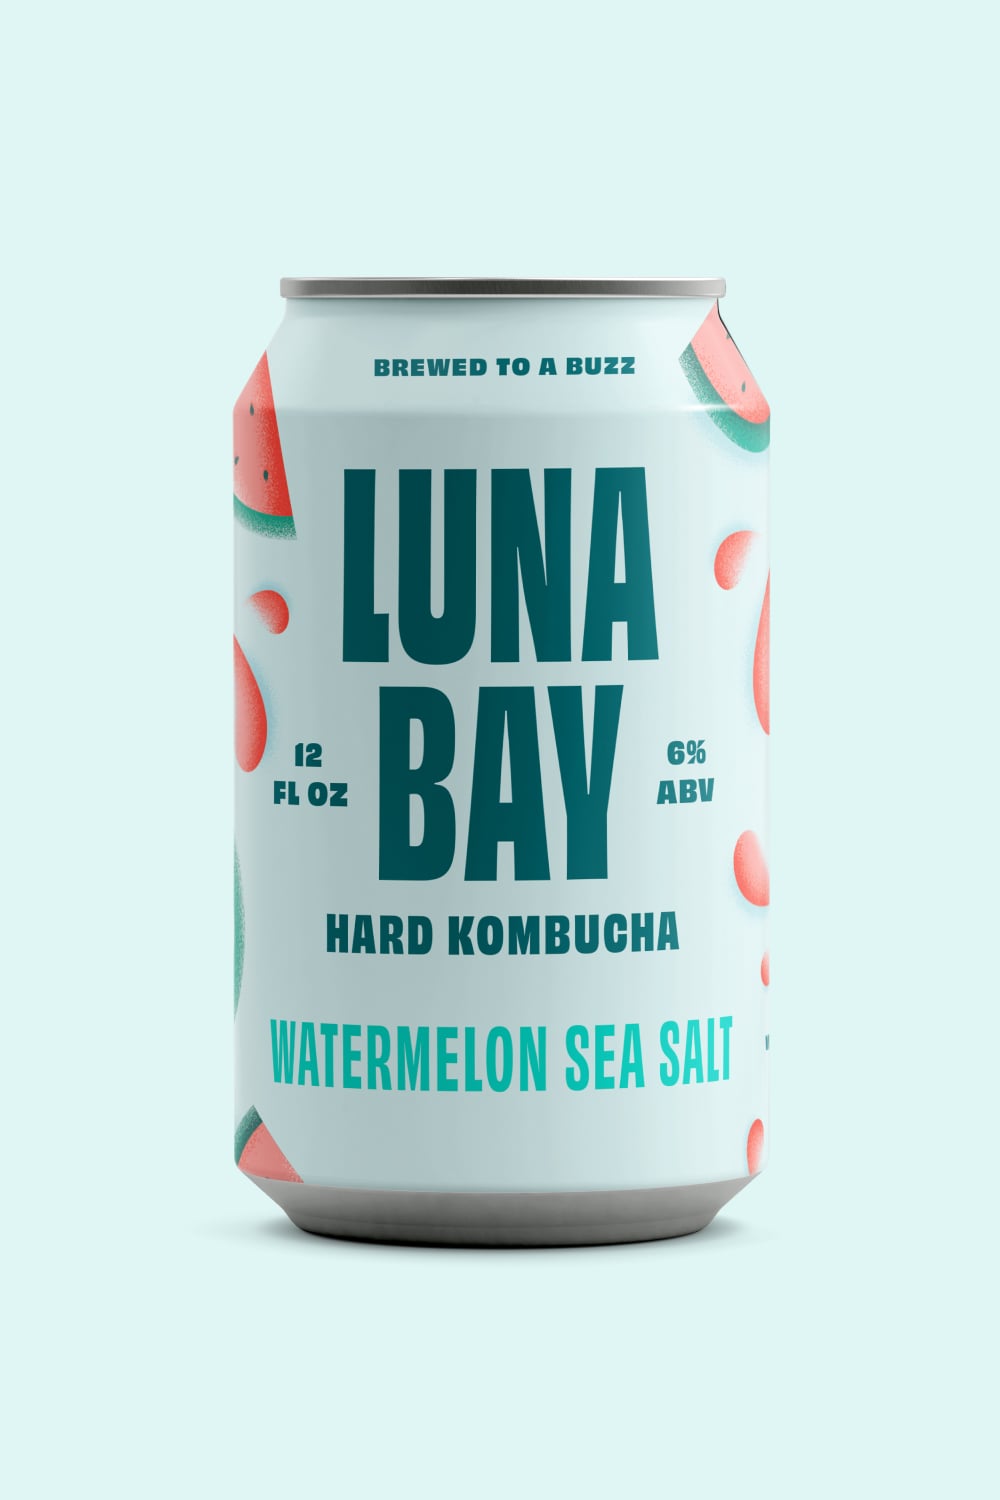 hard-kombucha-watermelon-sea-salt-min.jpg